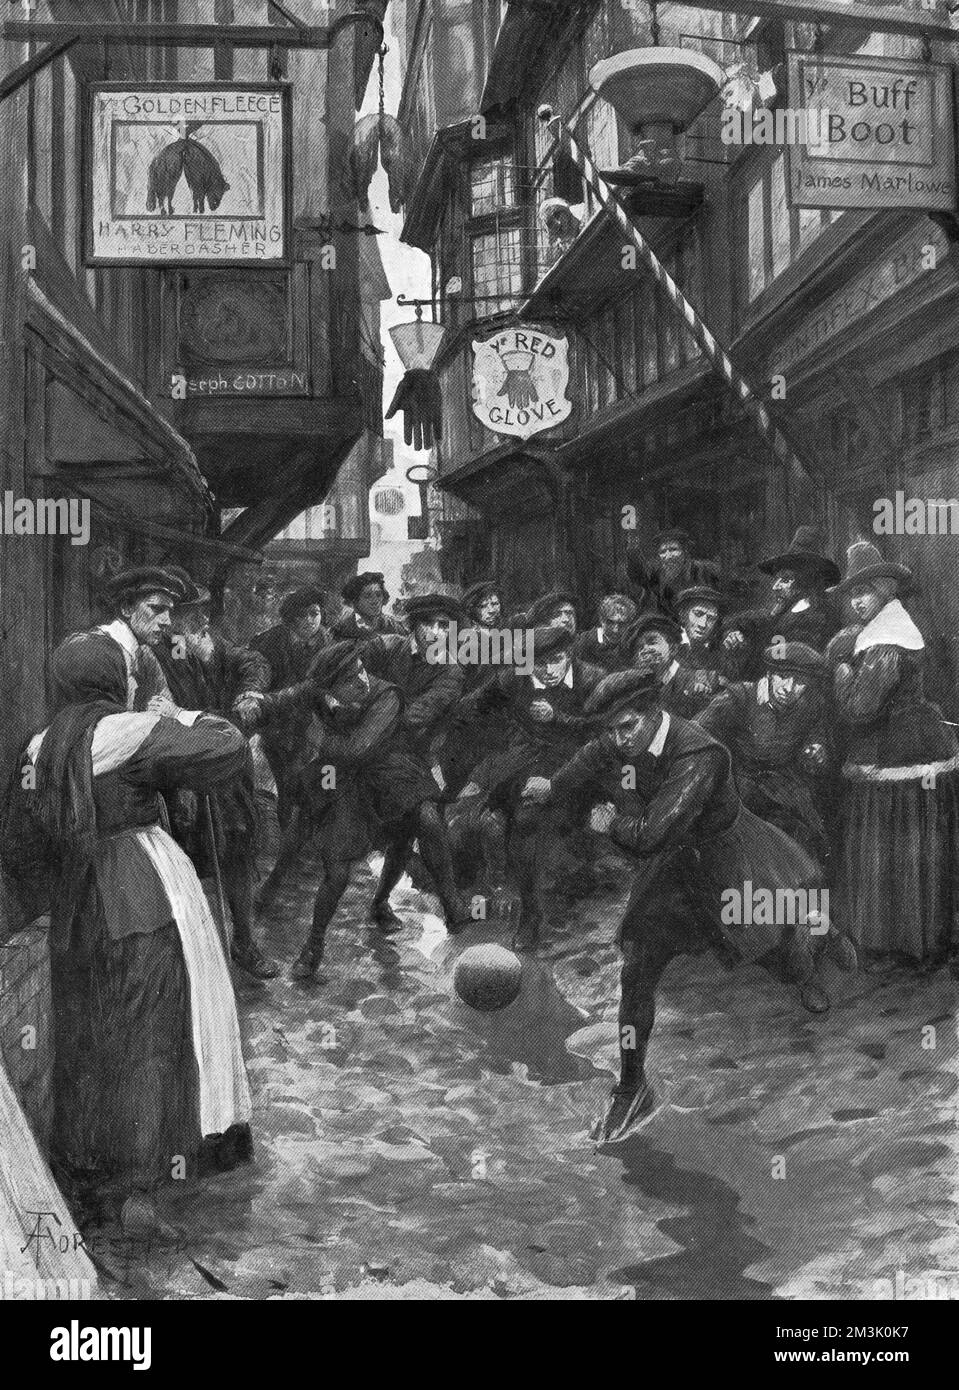 Ein Fußballspiel, spielte eine Gruppe von Auszubildenden, in den Straßen Londons. Football, damals ein Spiel ohne Regeln, wurde von Elizabeth I verboten, aber bis zur Zeit von Cromwell genossen. Datum: 16.. Jahrhundert Stockfoto